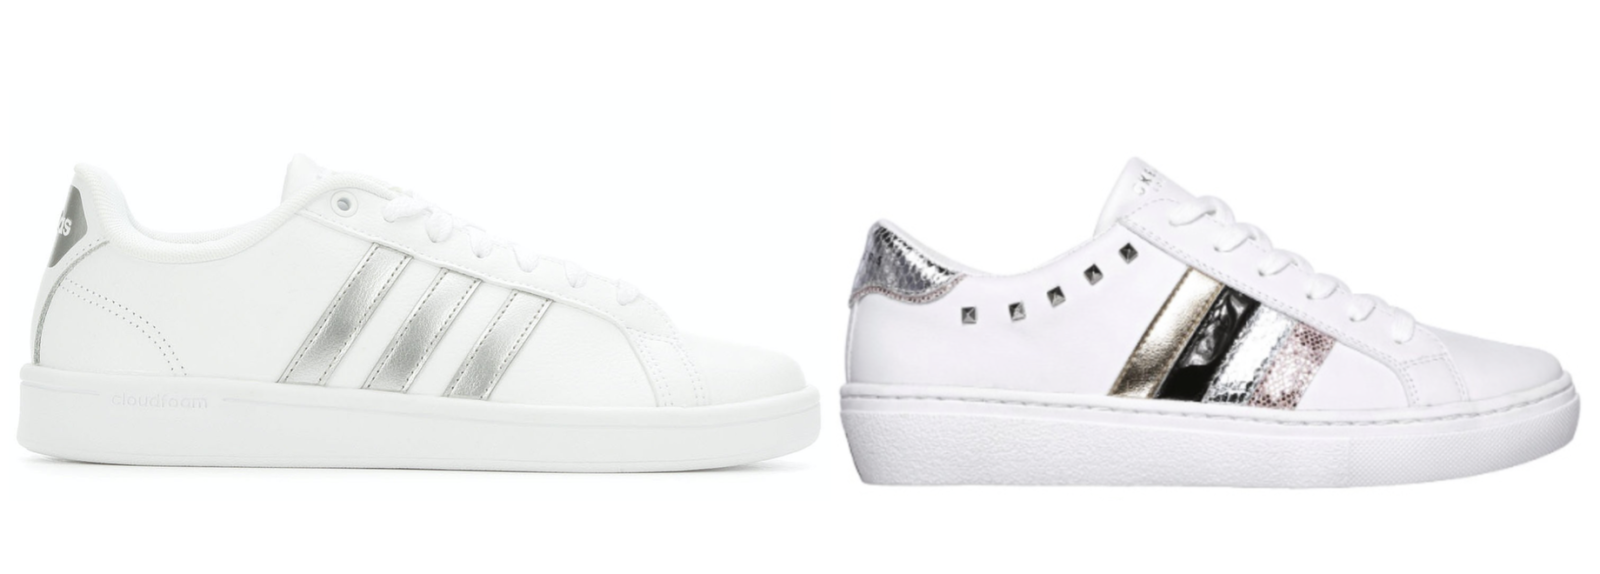  adidas Superstar (left) & Skechers’ Goldie-Peaks sneaker (right) 